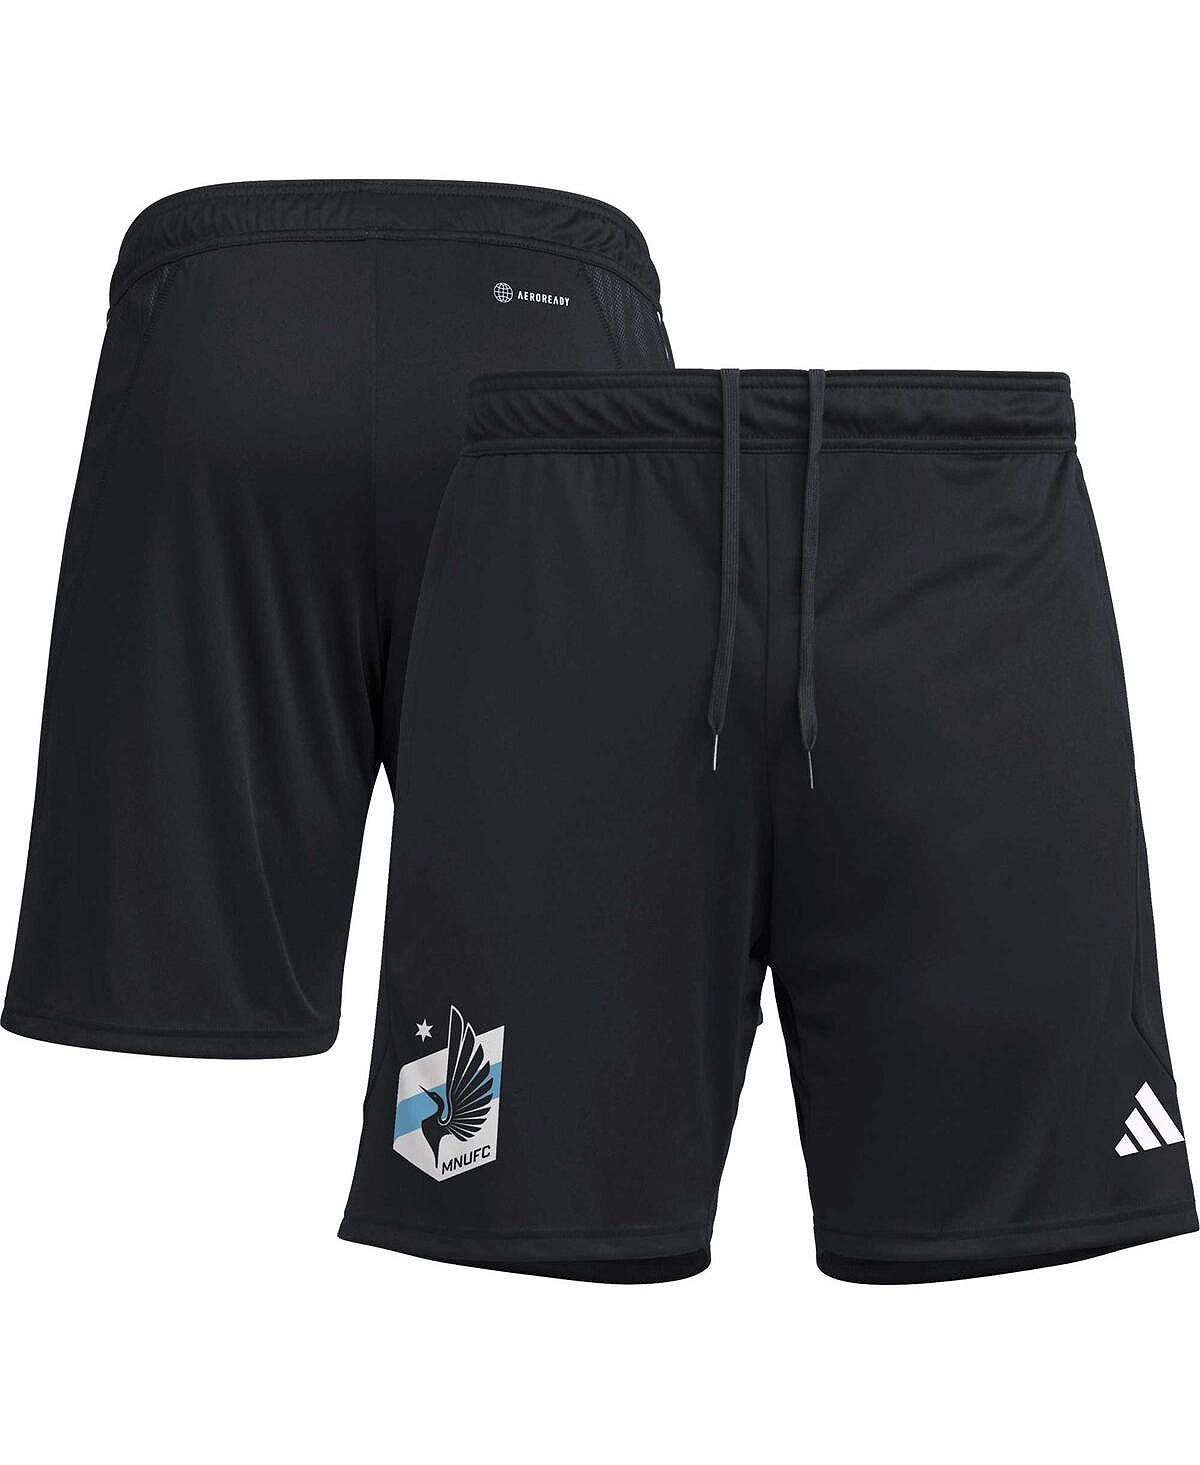 Мужские черные тренировочные шорты AEROREADY для тренировок Миннесота Юнайтед 2023 adidas мужские черные тренировочные шорты aeroready для тренировок atlanta united fc 2023 adidas